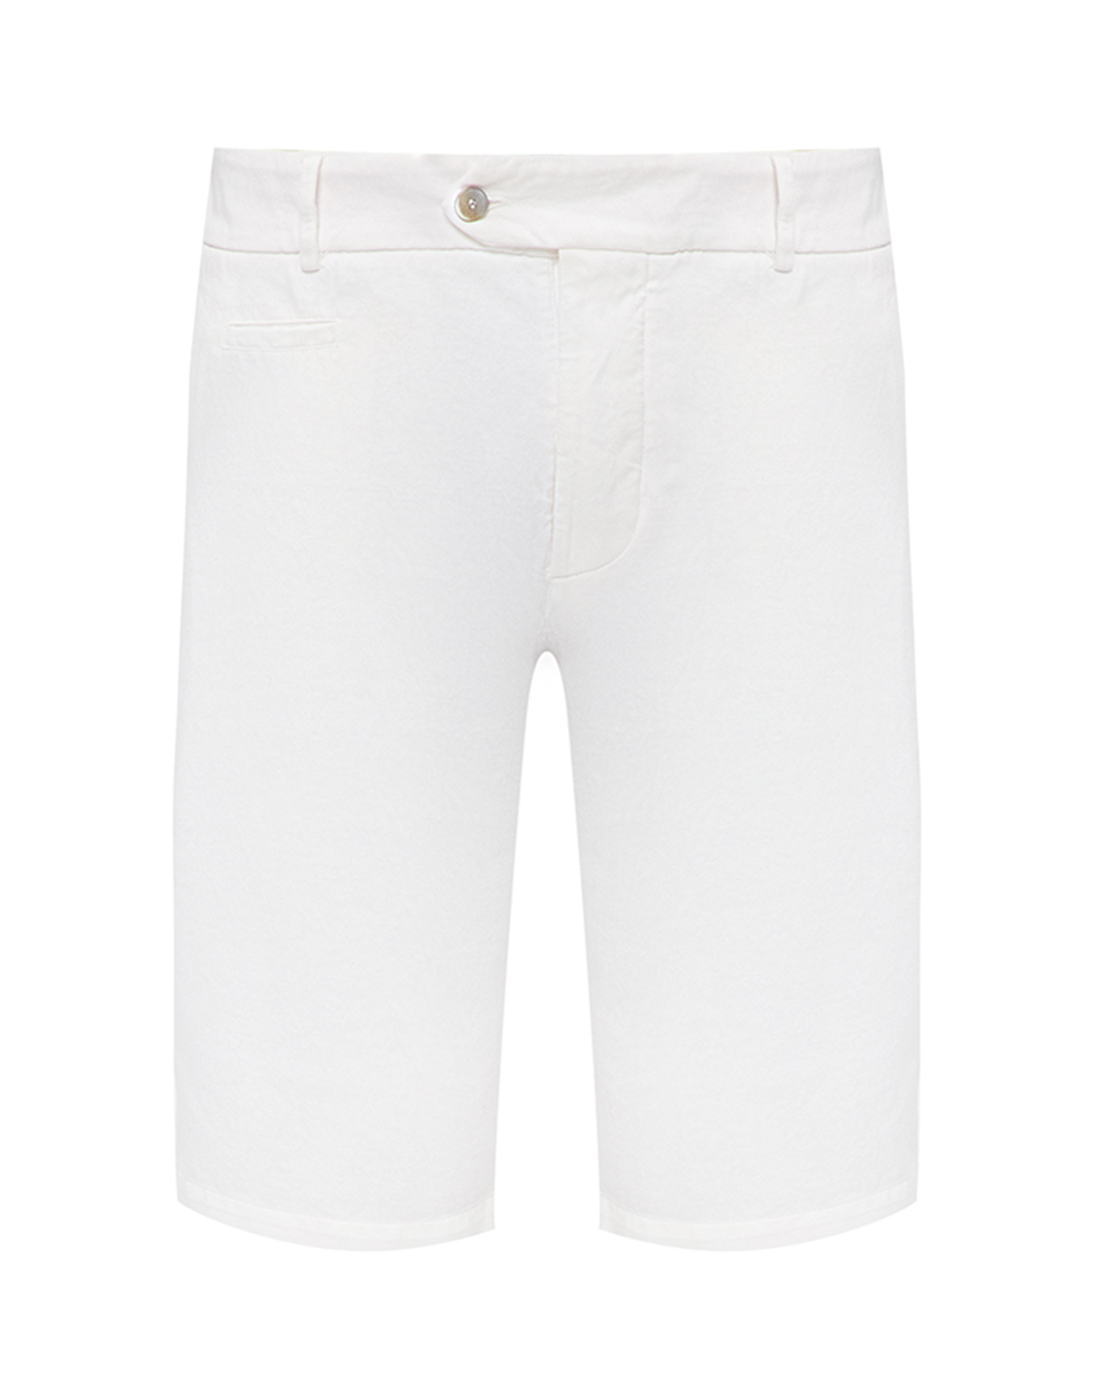 Мужские белые шорты  Capobianco S12M816.AC01.WHITE-1